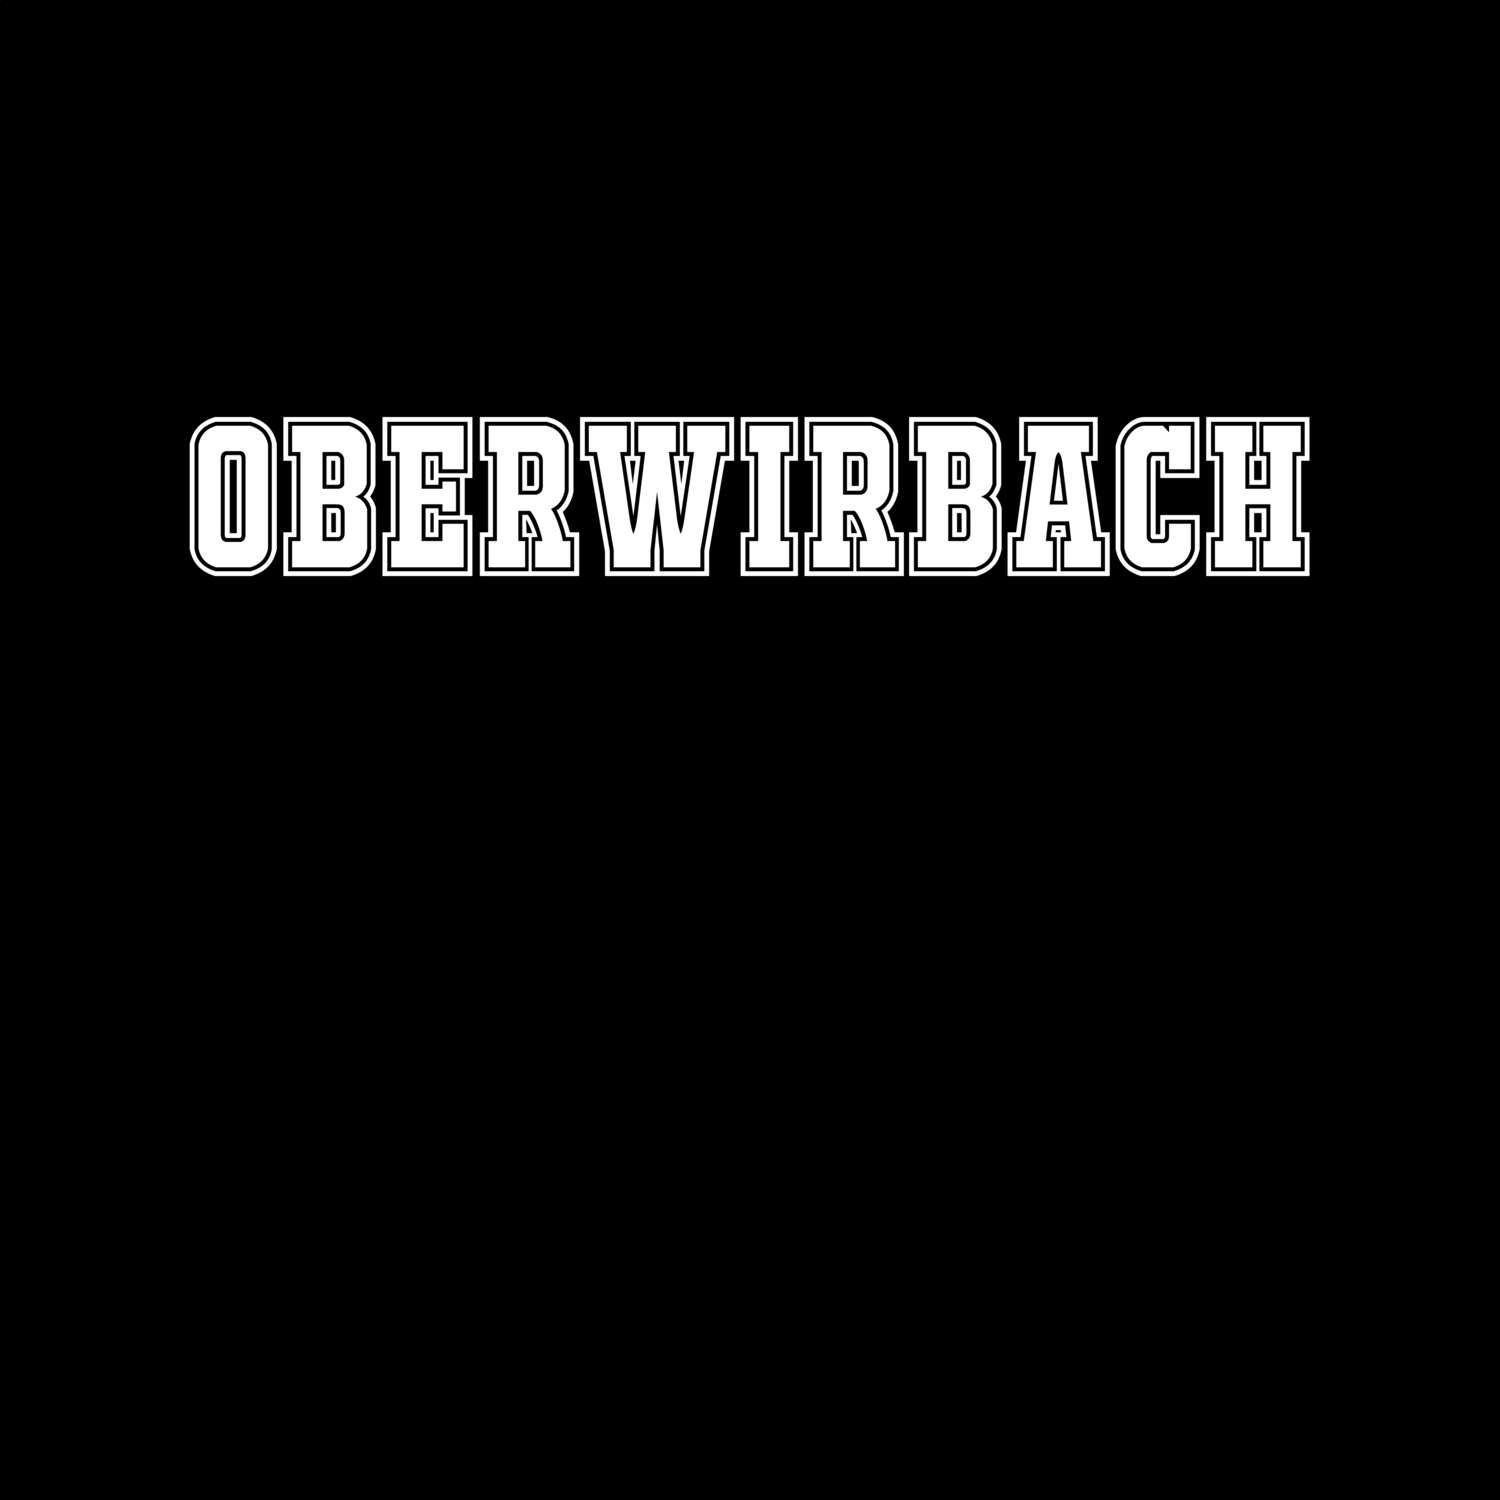 Oberwirbach T-Shirt »Classic«